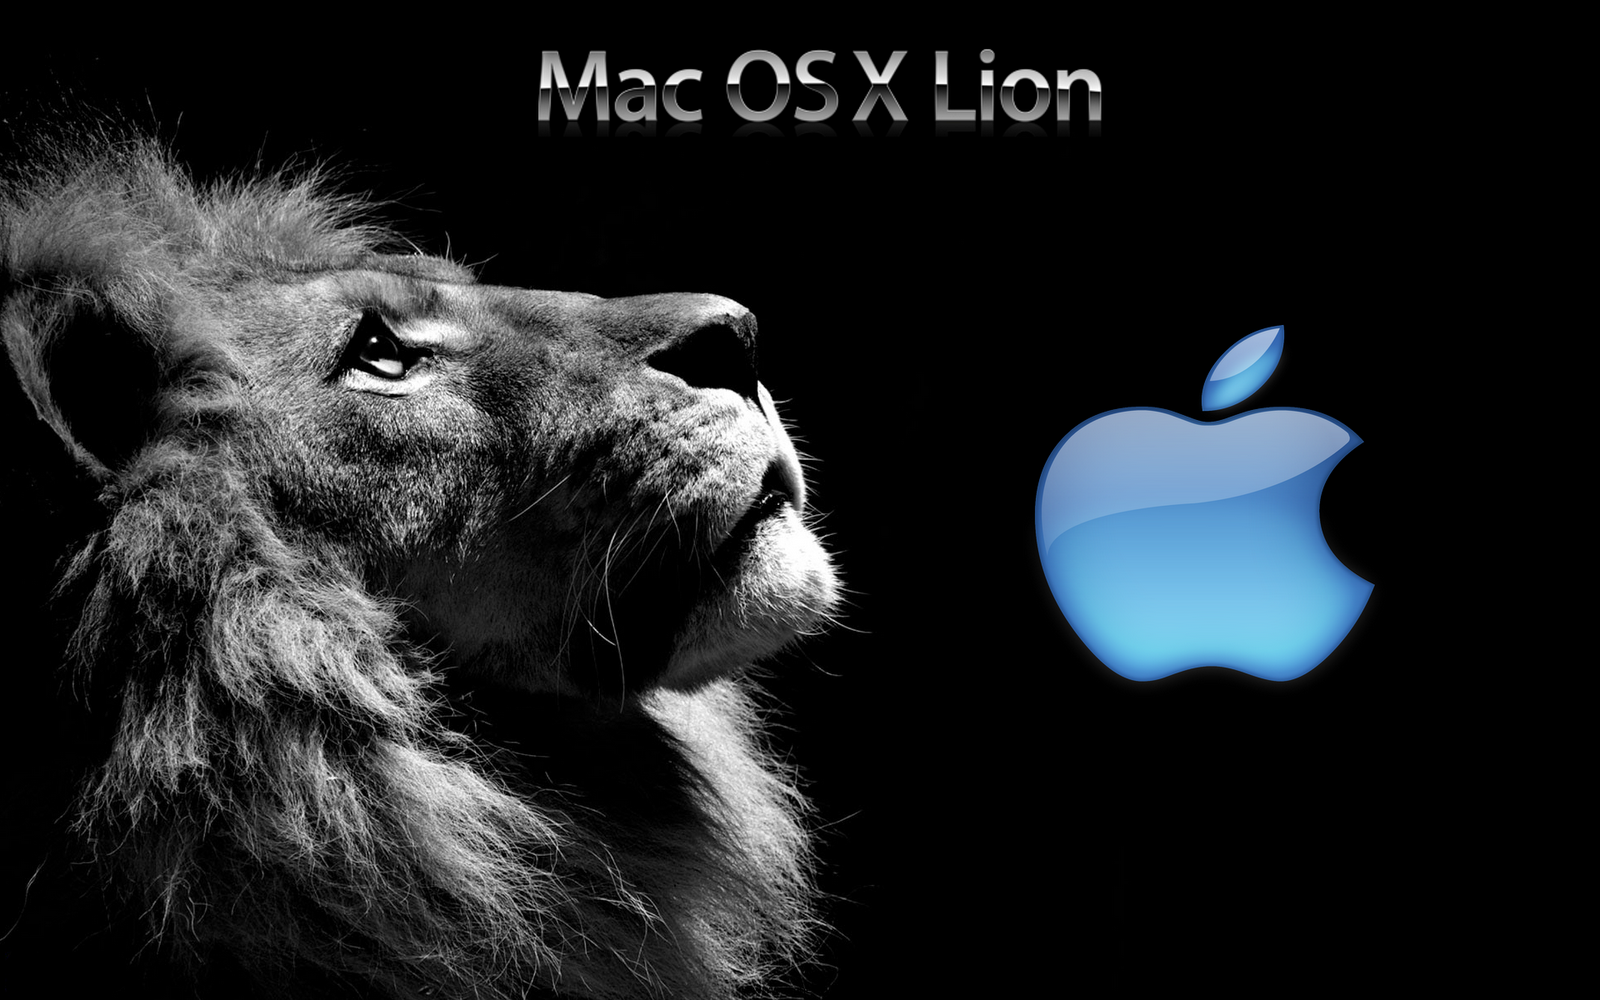 http://3.bp.blogspot.com/-xsMSGacvz5U/UD3VuZzHx4I/AAAAAAAAAR8/e1VKkAQk6kg/s1600/Lion+with+blue+colour+apple+logo+mac+os+x+lion+wallpaper+unseen.jpg